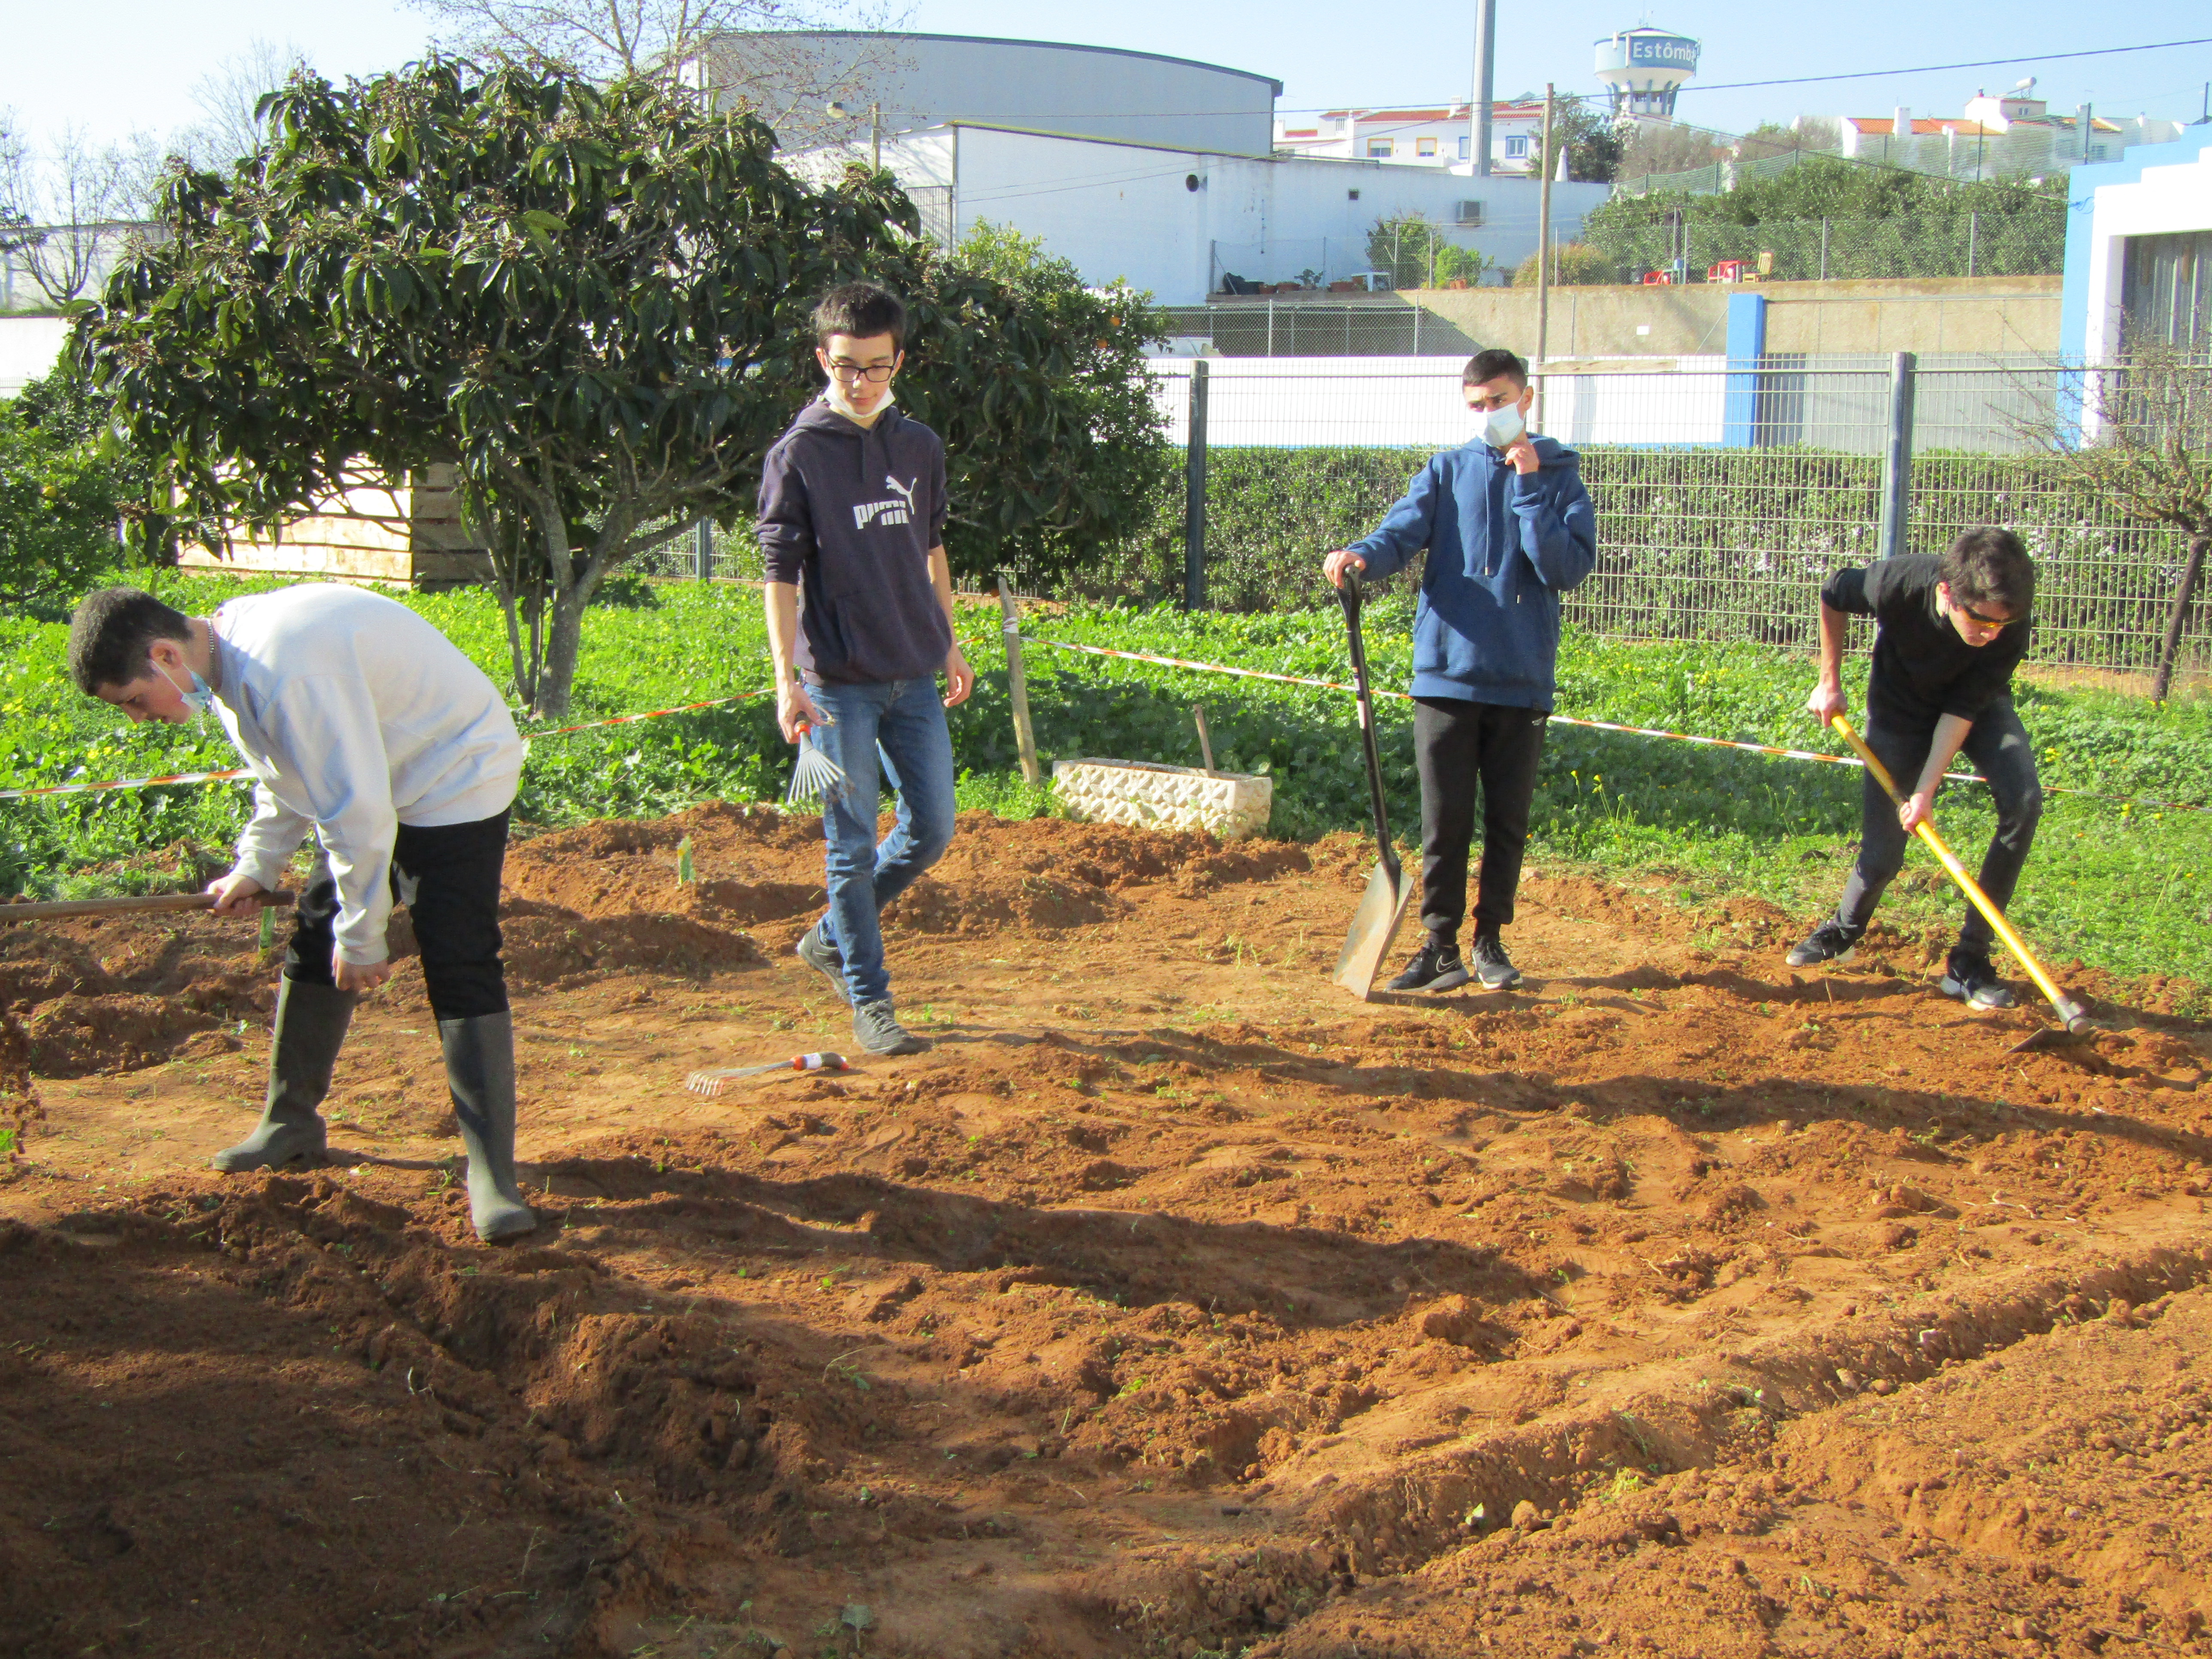 Continuação da preparação do terreno, por parte dos alunos, com a remoção de plantas infestantes e outros detritos.